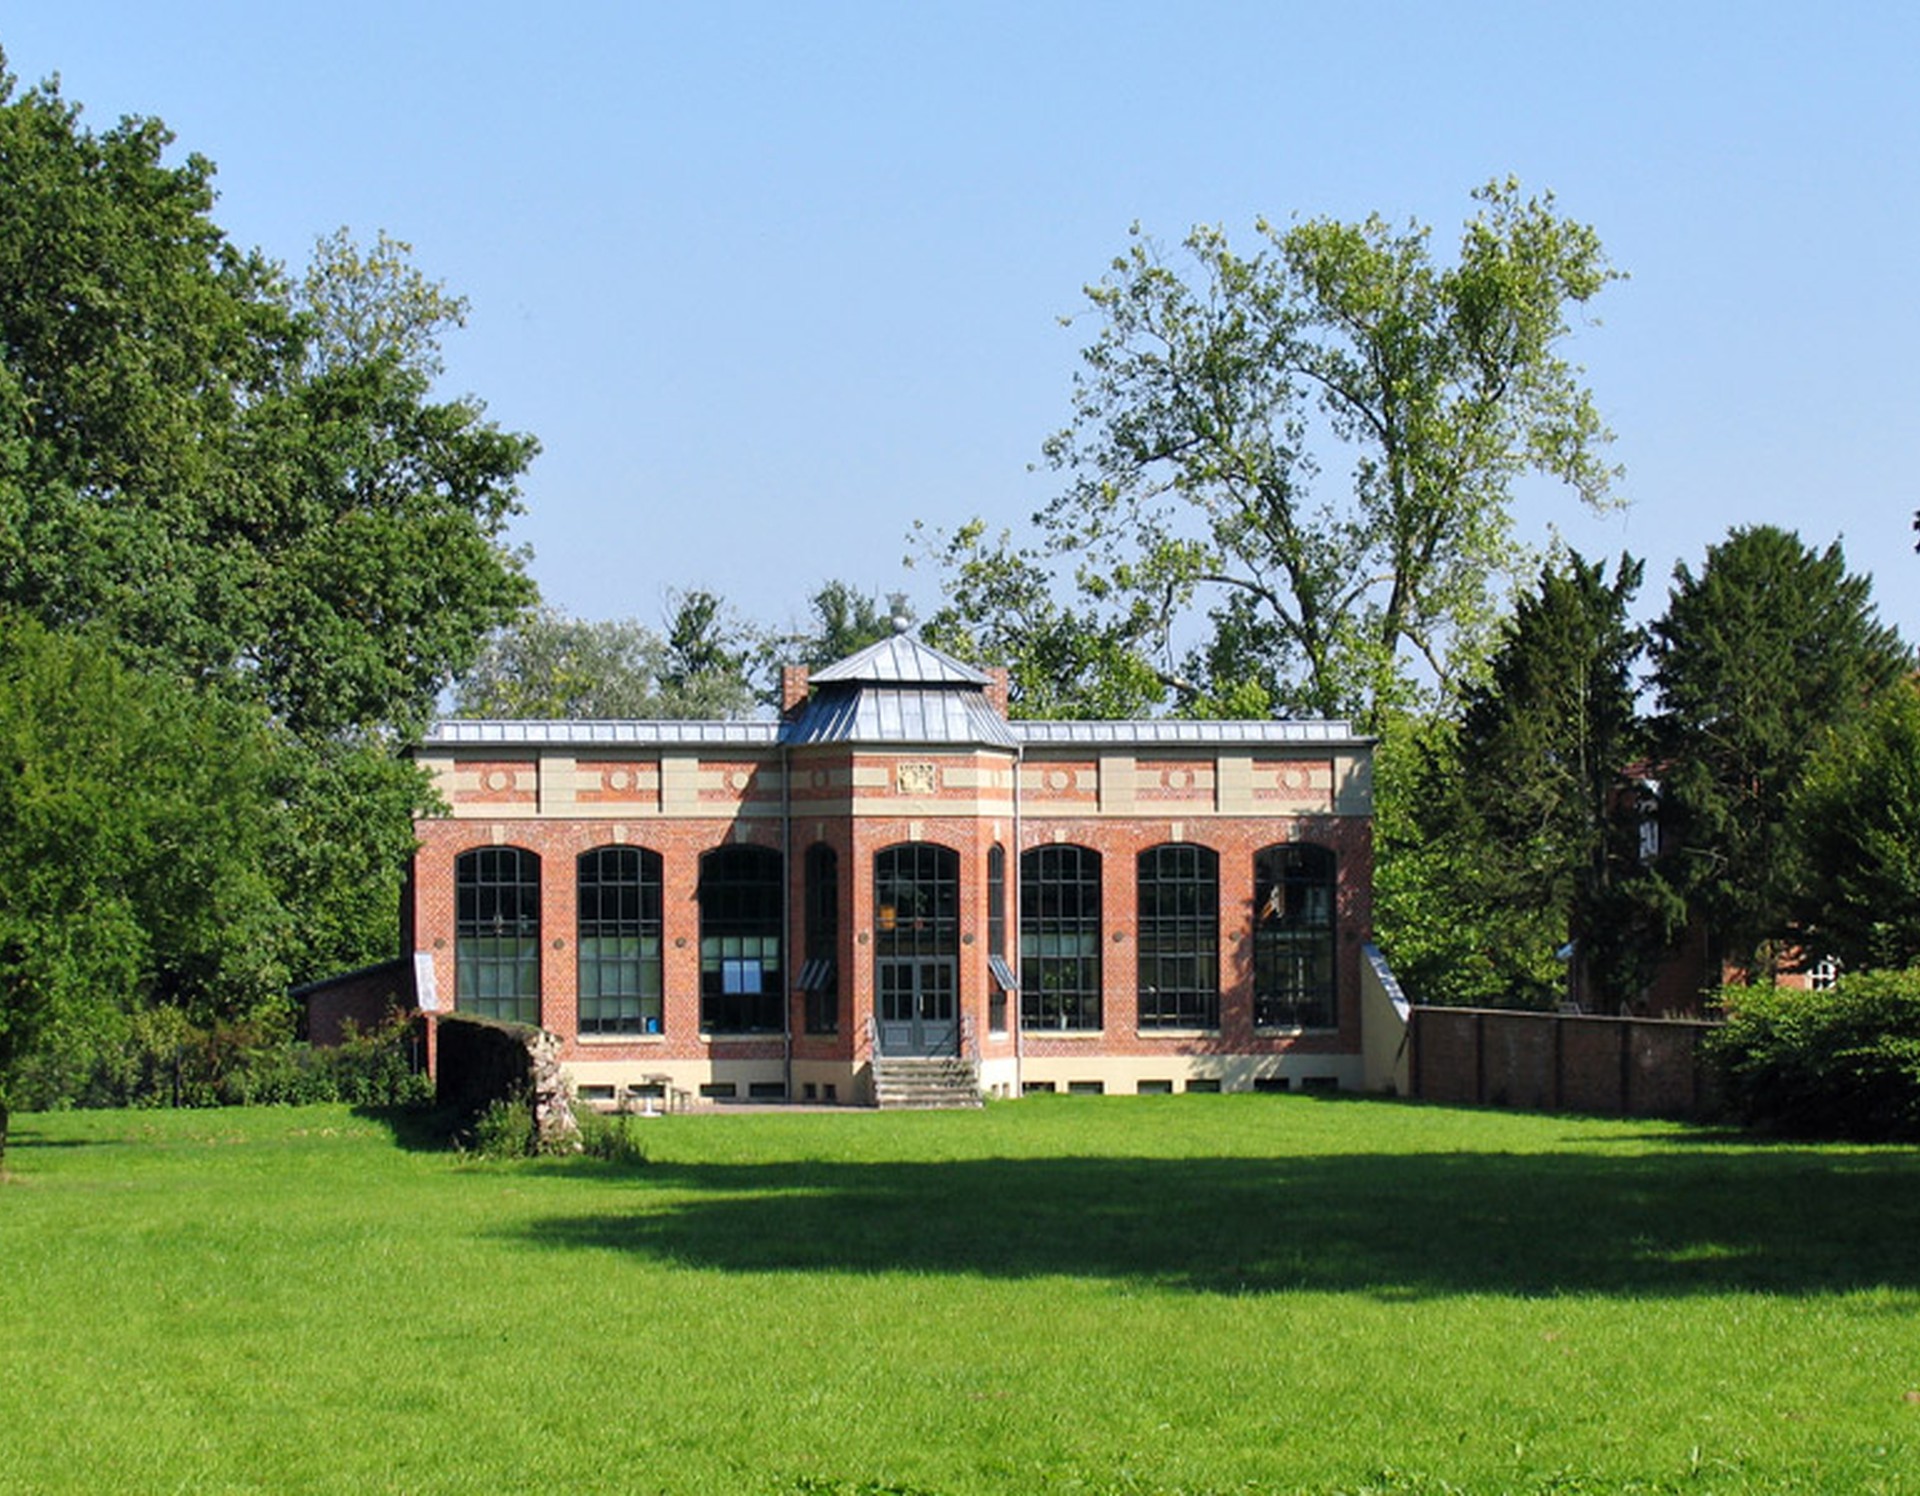 Blick auf die Orangerie des Schlosses Westerwinkel.